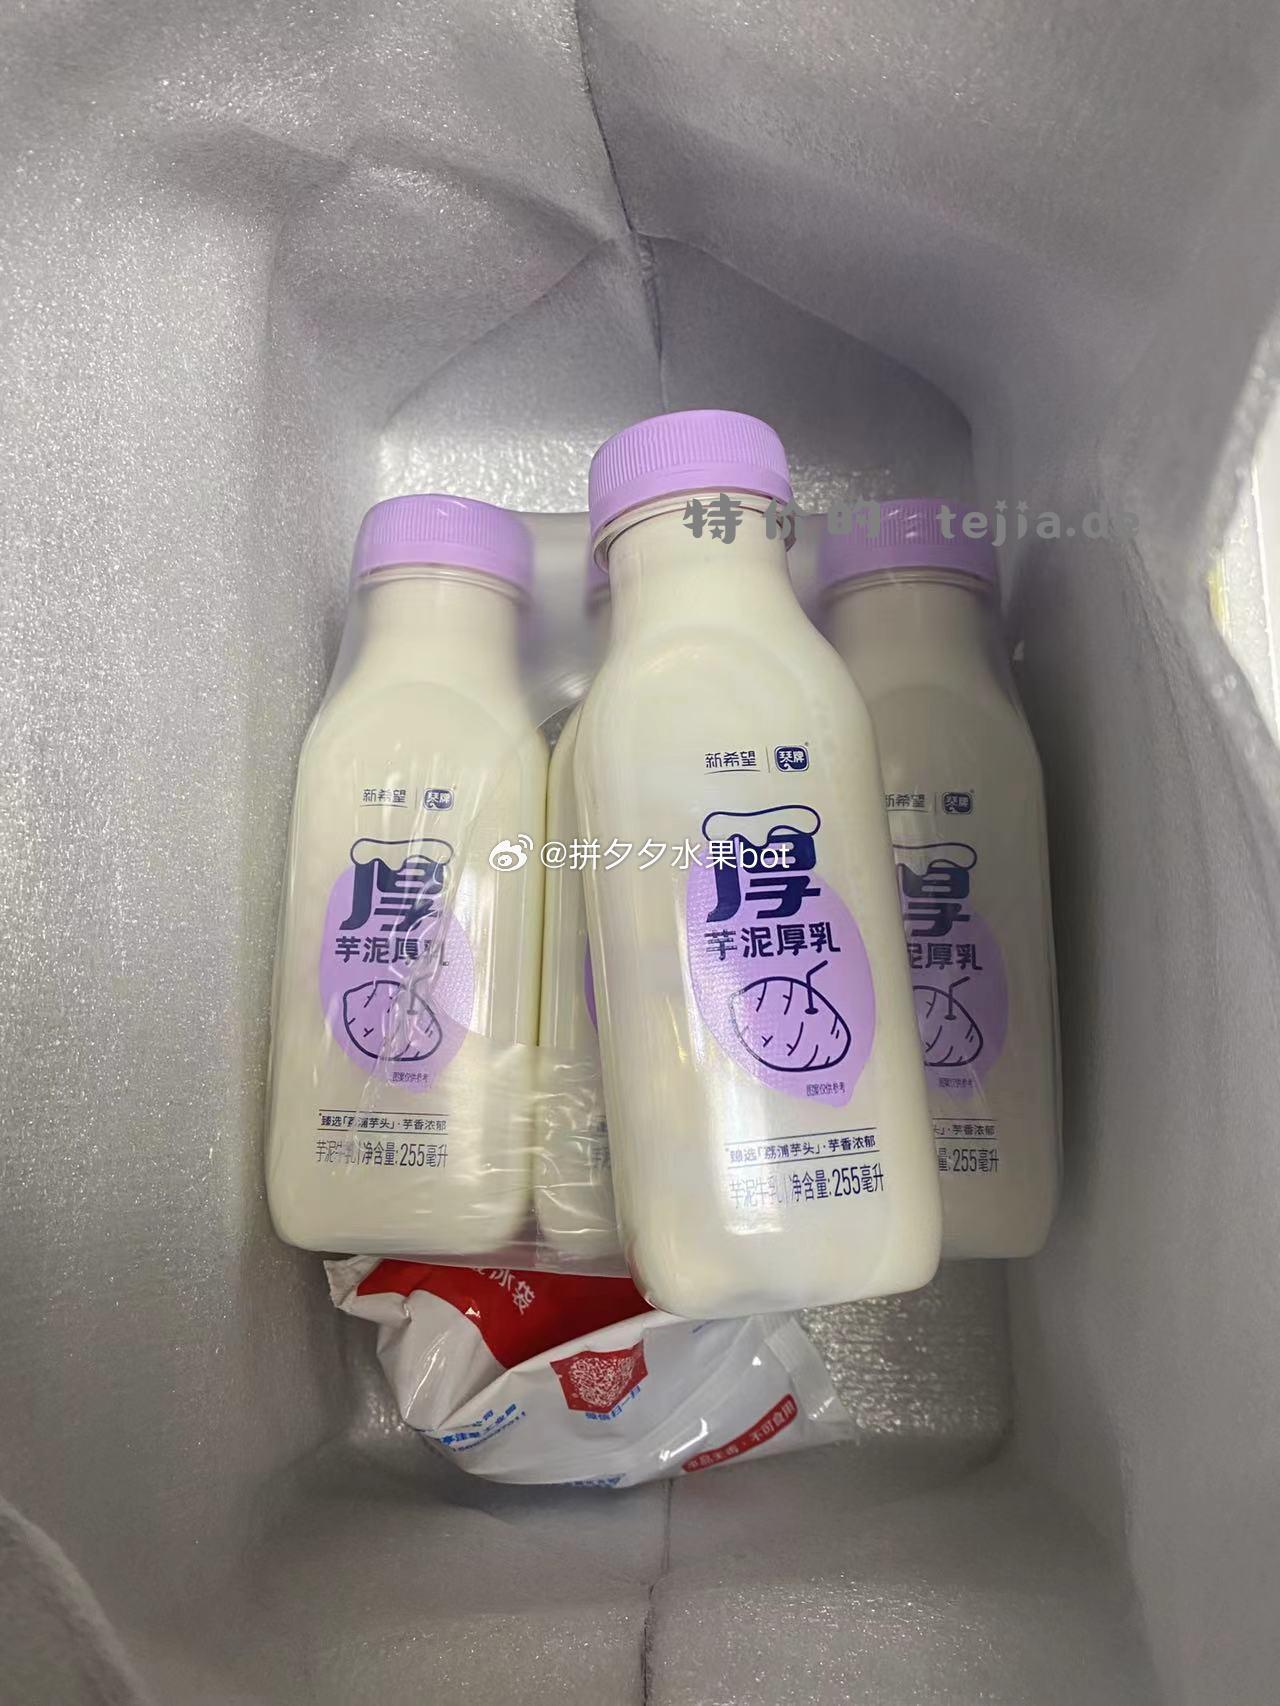 夕夕实测 买了一箱新希望的芋泥厚乳牛奶 看了配料表是调制乳 生牛乳占了80% 白糖还有芋泥粉占了1% - 特价的